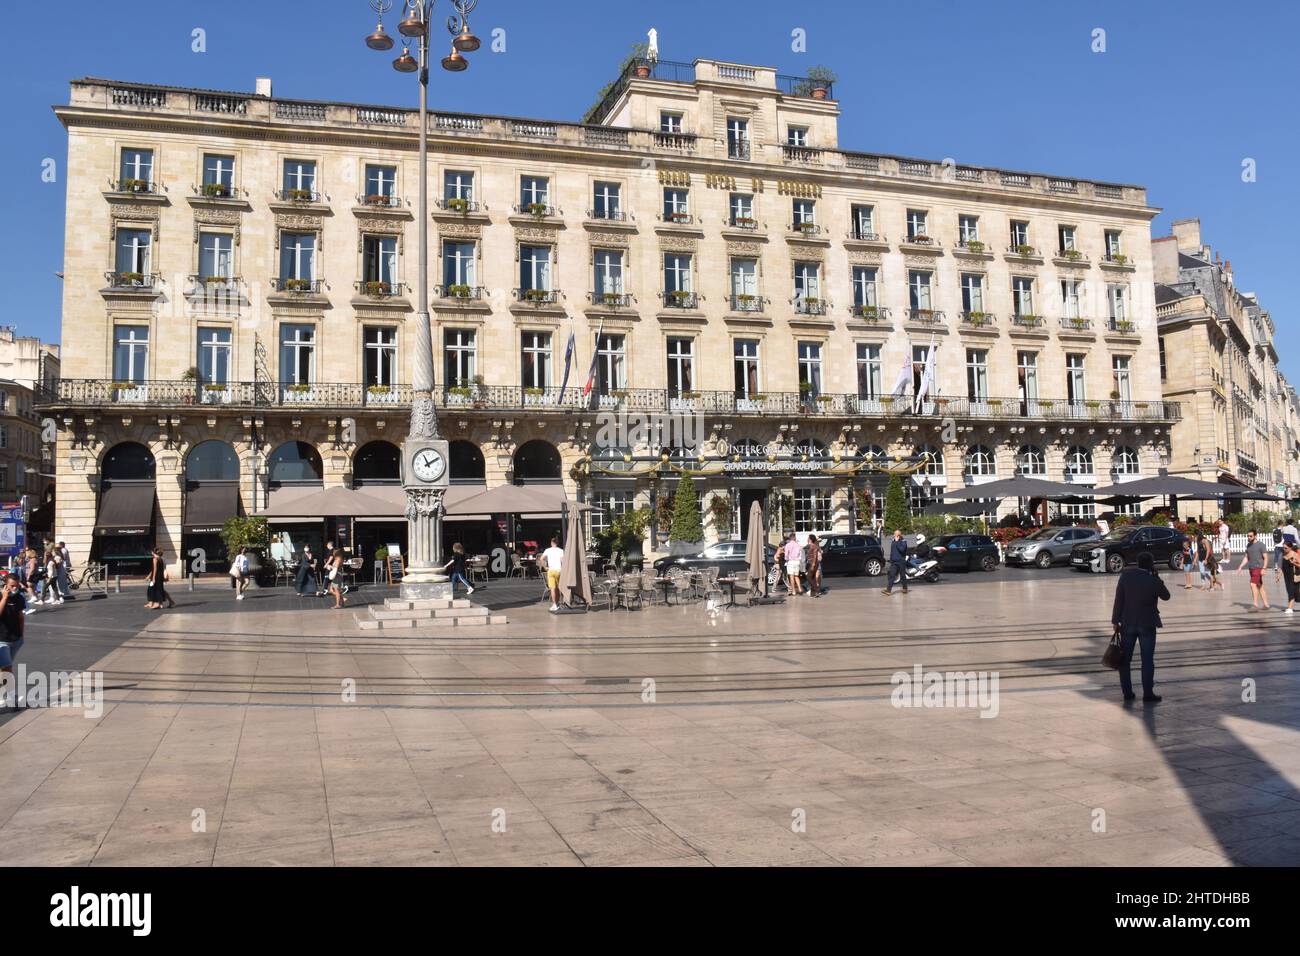 El Intercontinental, Grand Hotel de Bordeaux, frente al Teatro Grande frente a la Place de la Comédie, construida en 1776, por el arquitecto Victor Louis. Foto de stock